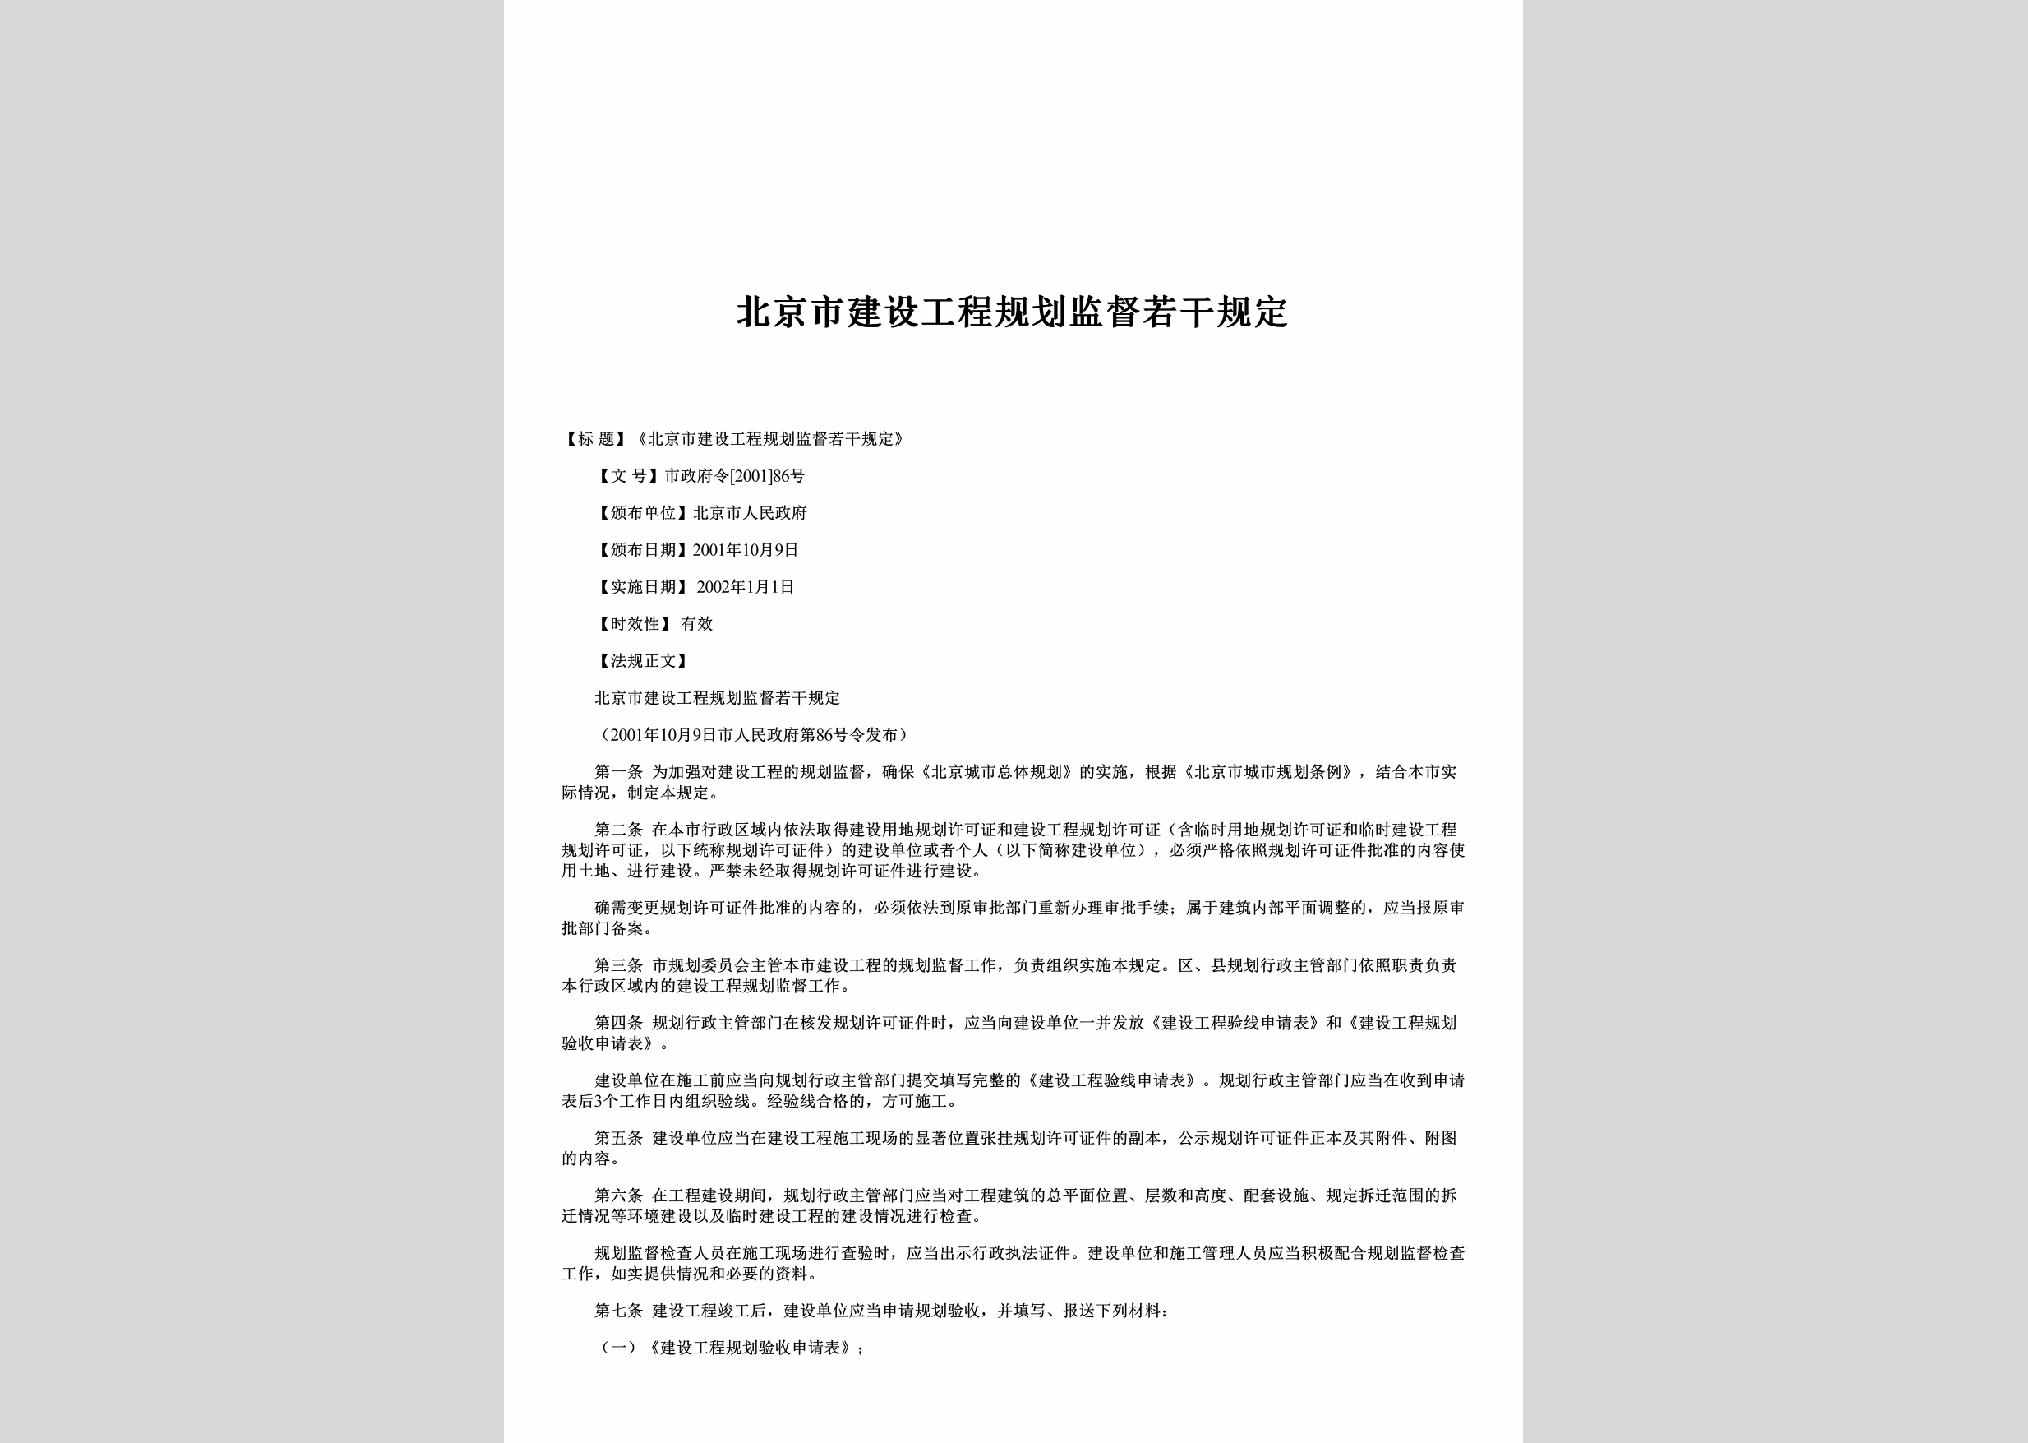 市政府令[2001]86号：北京市建设工程规划监督若干规定